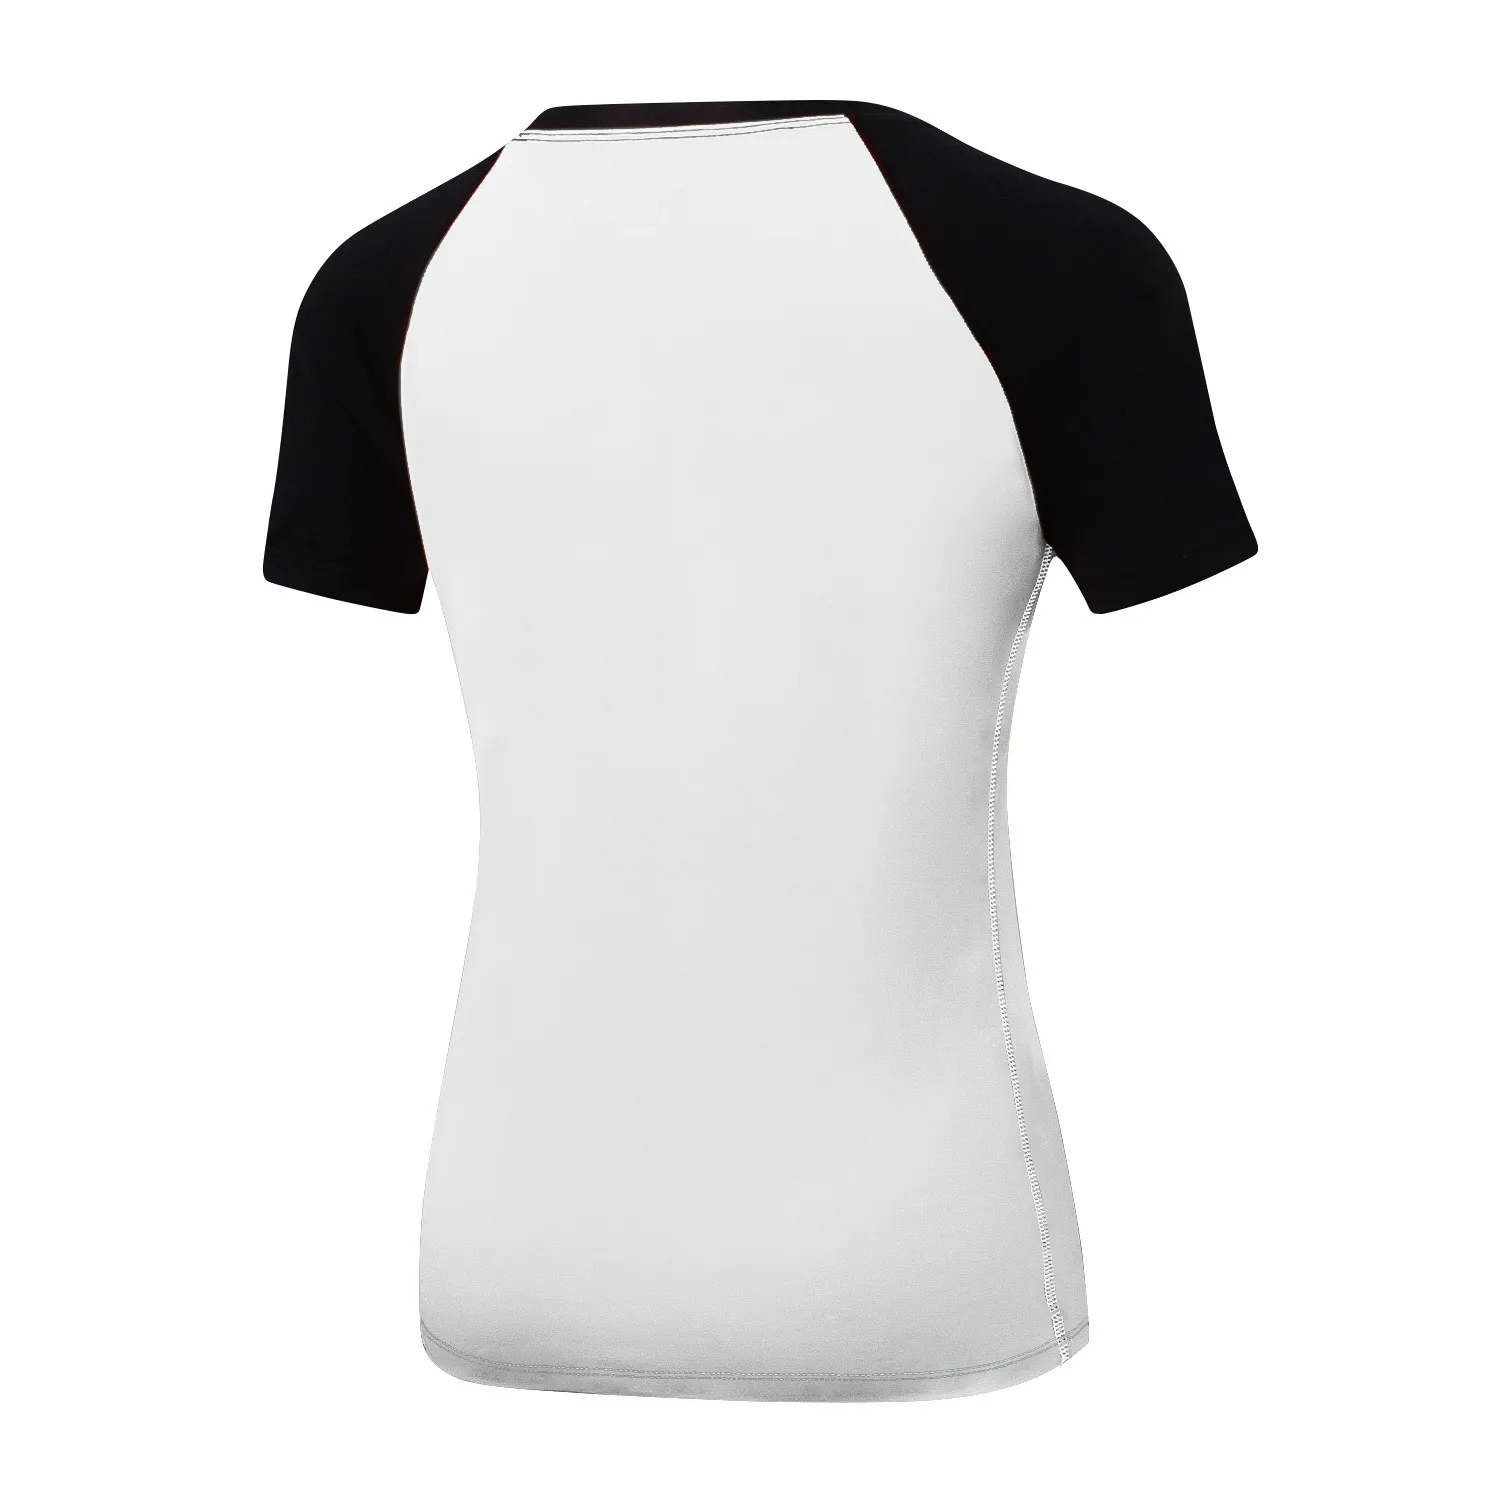 Женские быстросохнущие футболки для фитнеса, эластичные спортивные футболки для йоги, трико, топы для спортзала, бега, футболки с коротким рукавом, блузки, рубашки